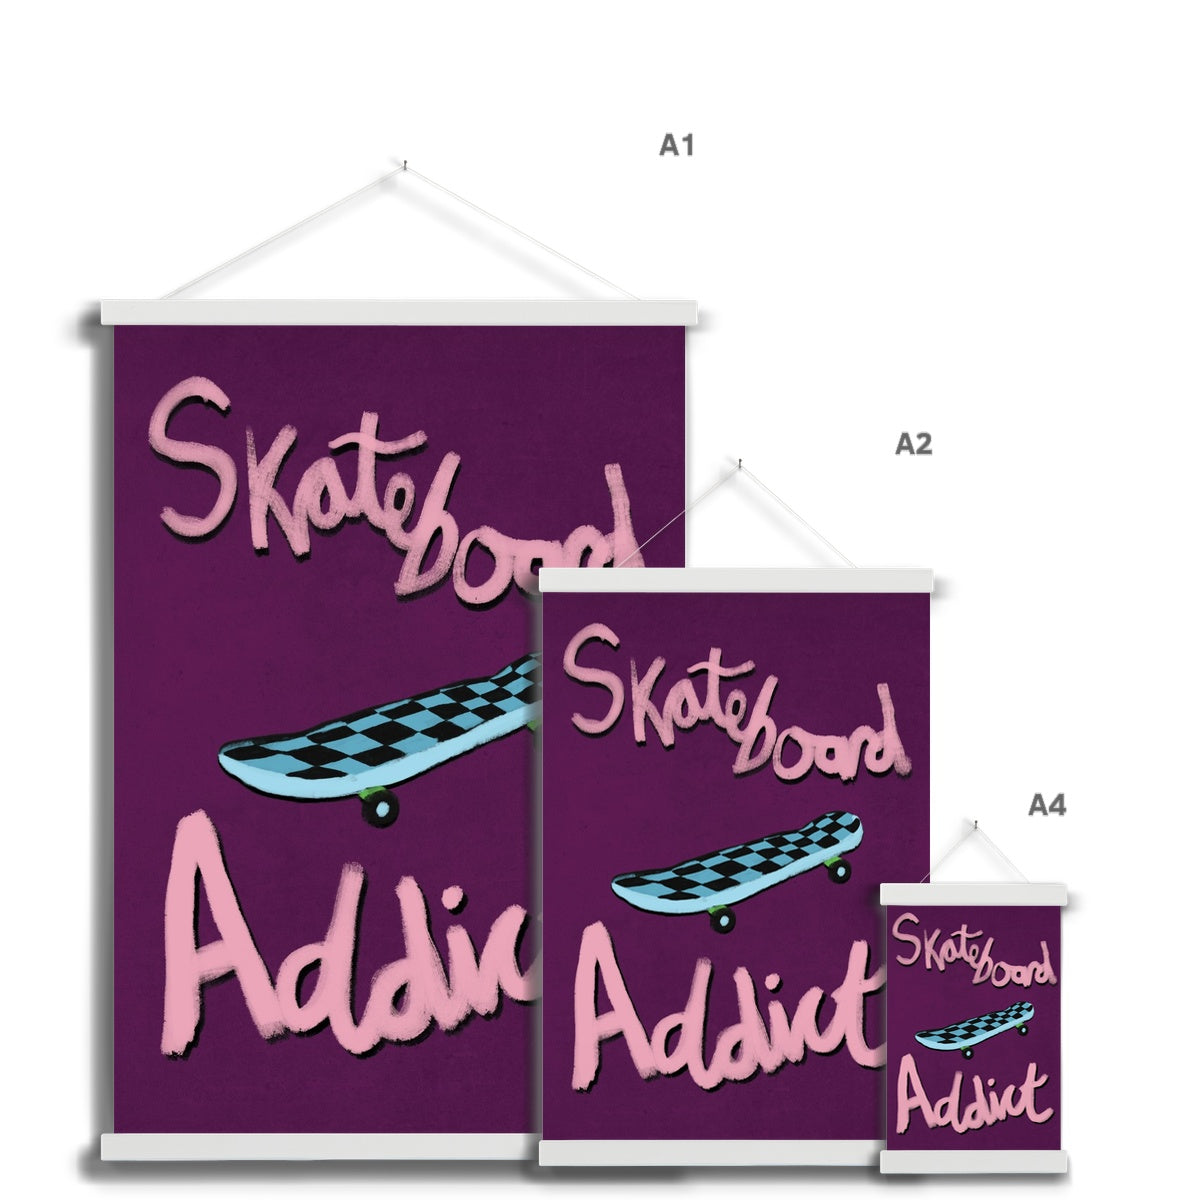 Skateboard Addict - Dark Purple, Pink, Blue Fine Art Print with Hanger